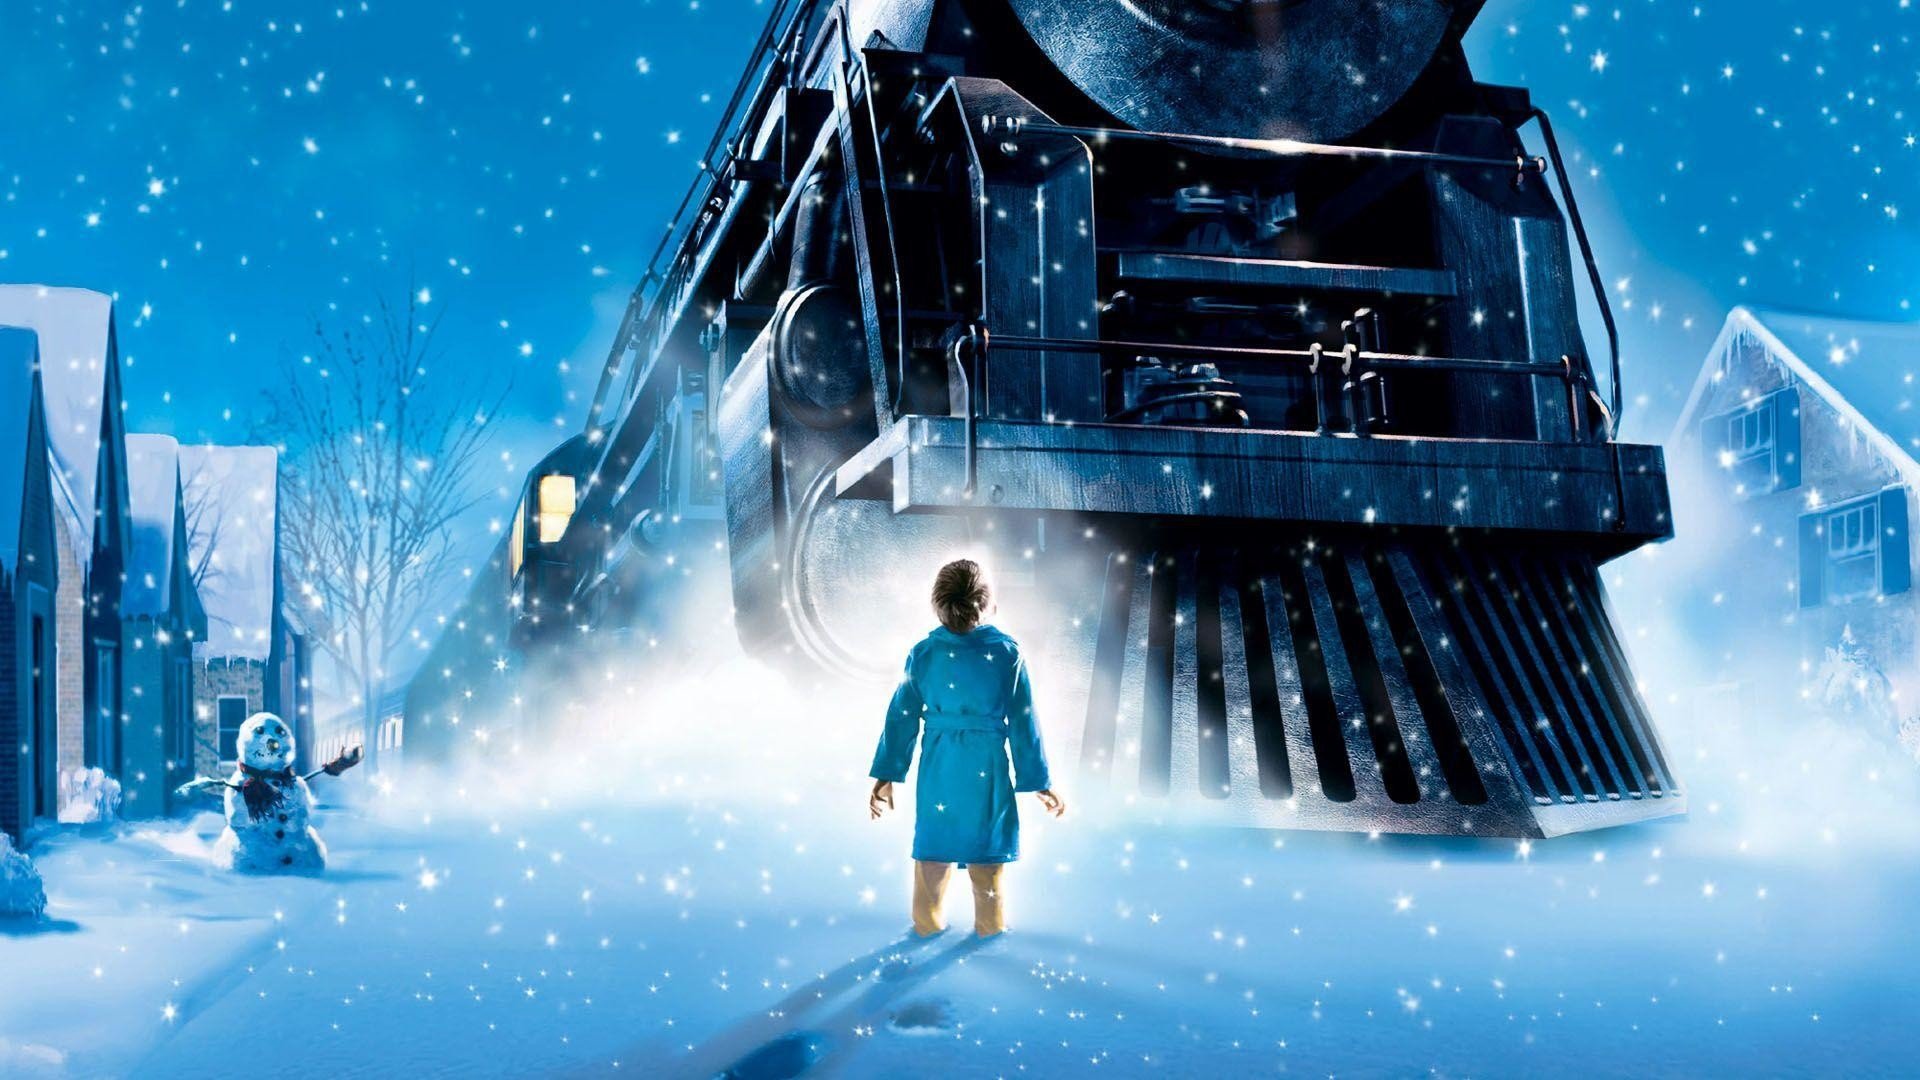 Filmes de Natal para assistir com a família #3- O Expresso Polar 